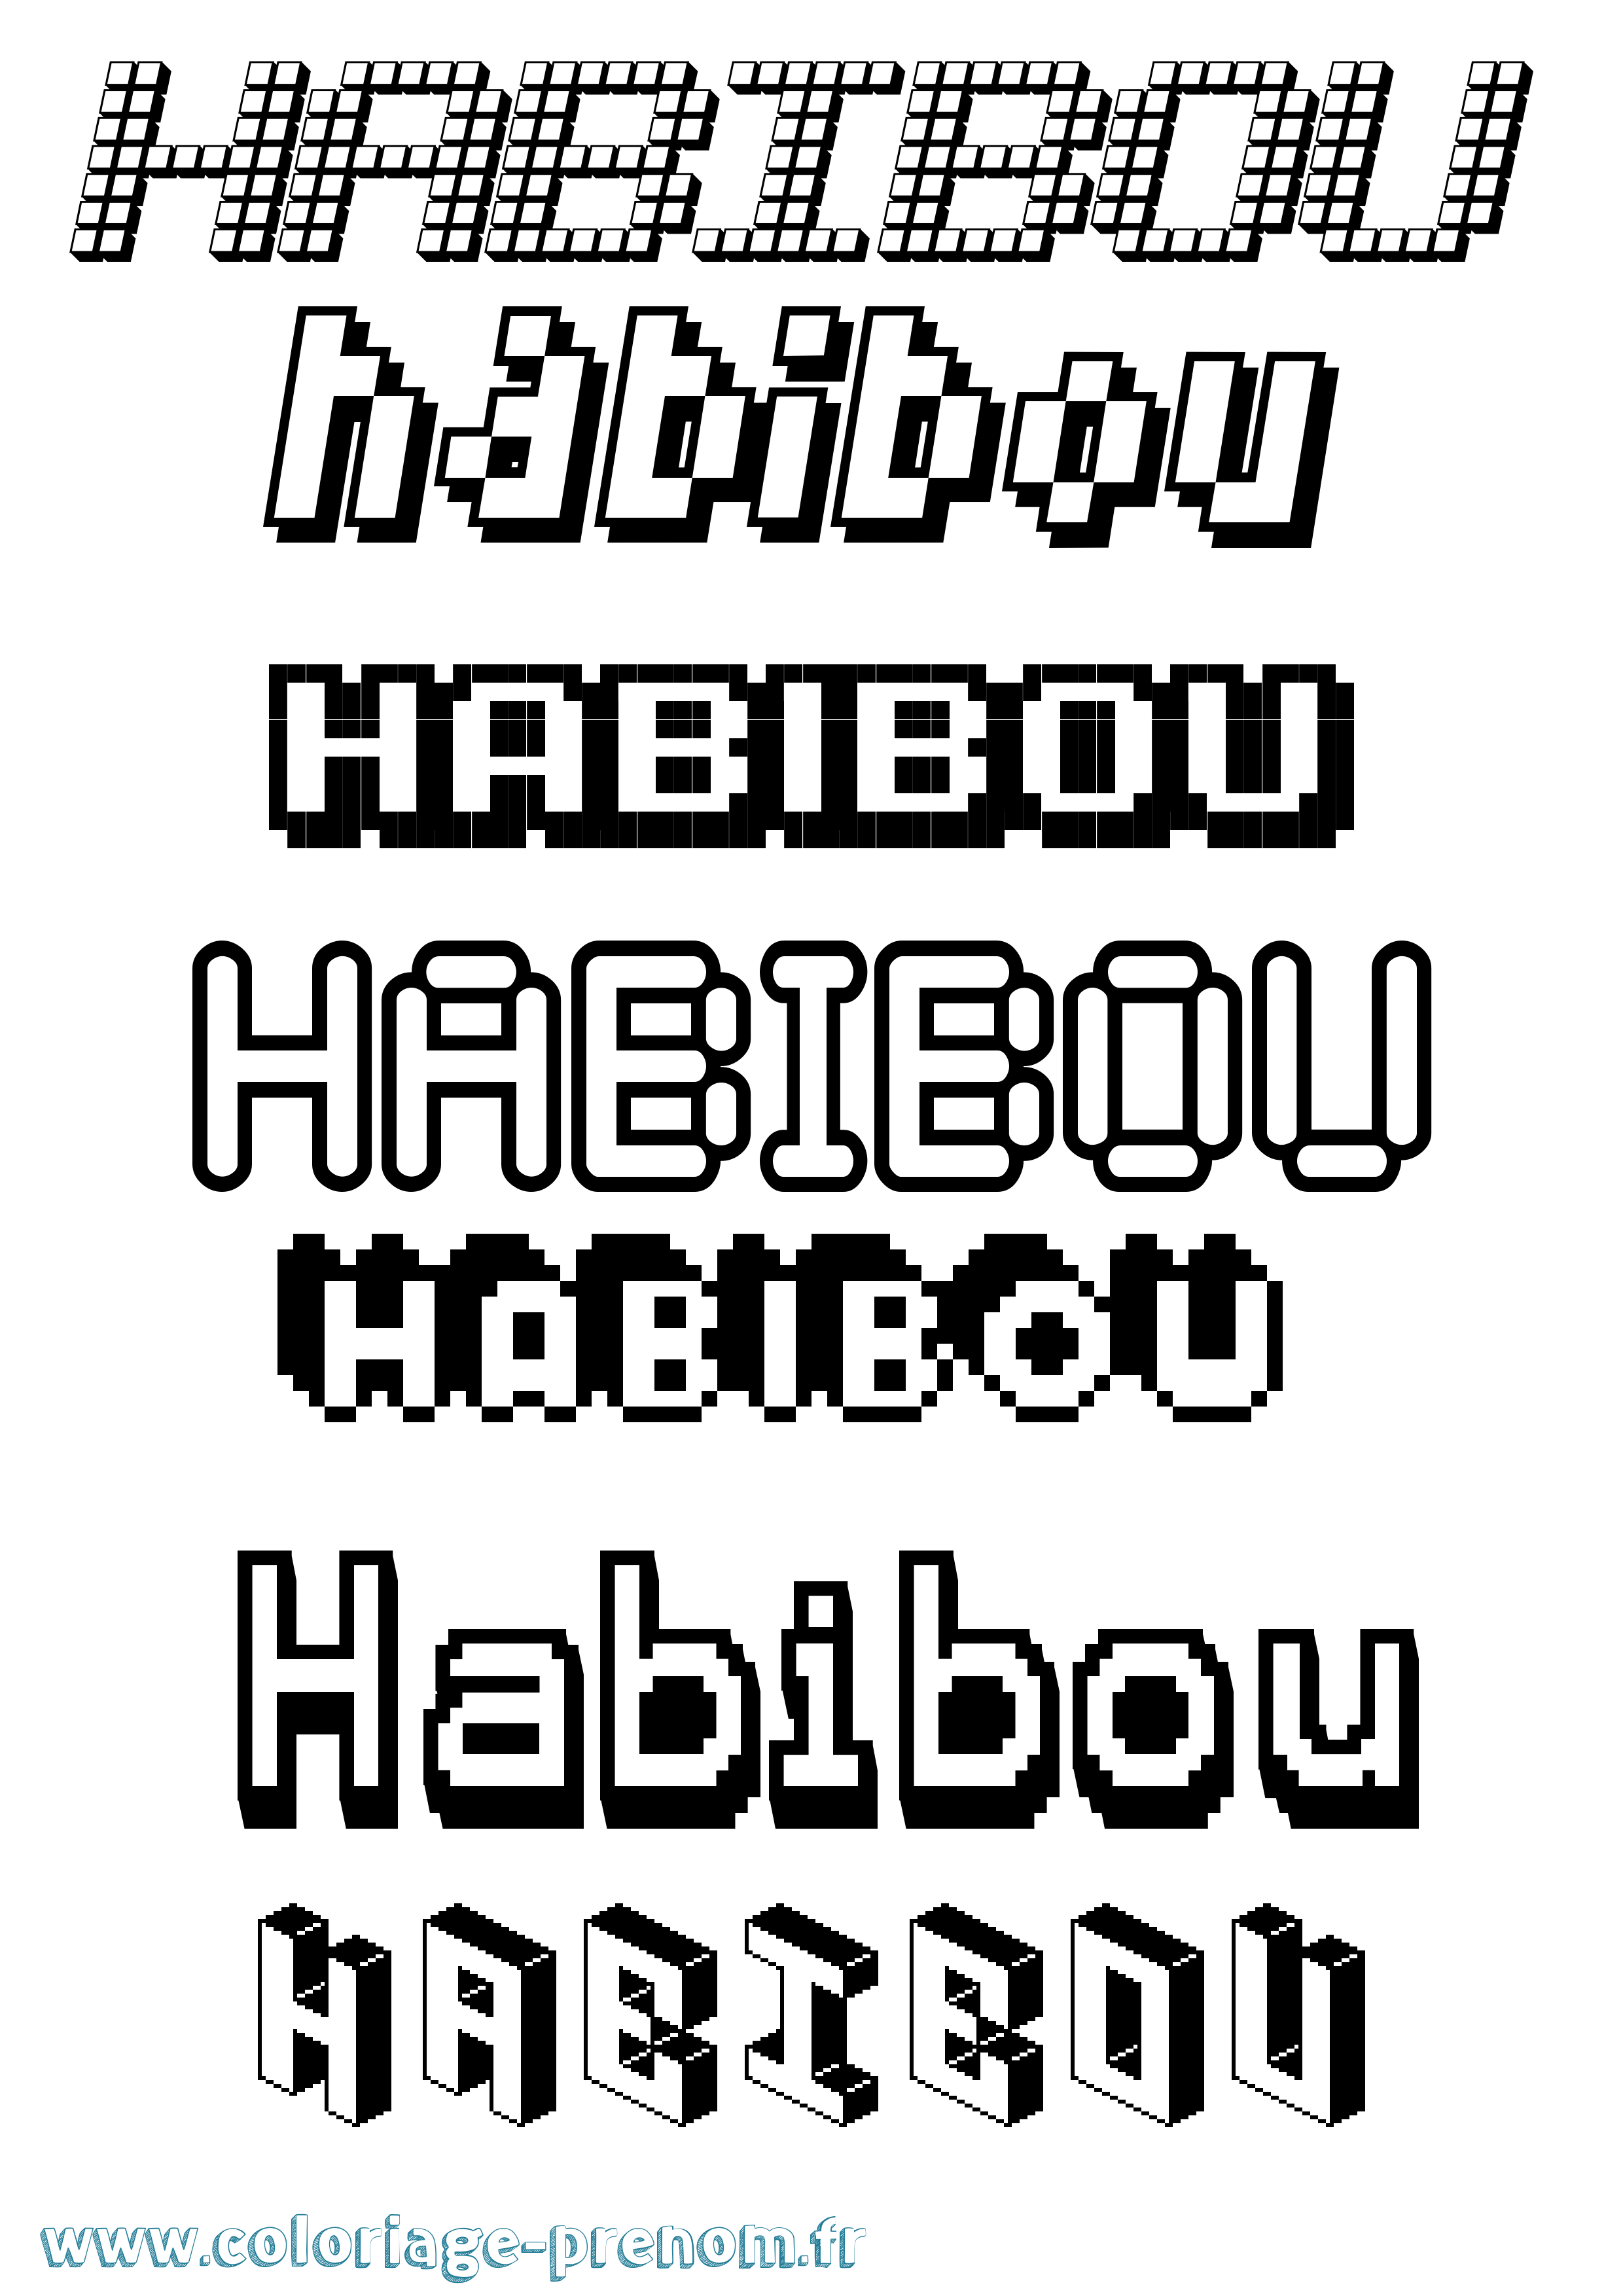 Coloriage prénom Habibou Pixel